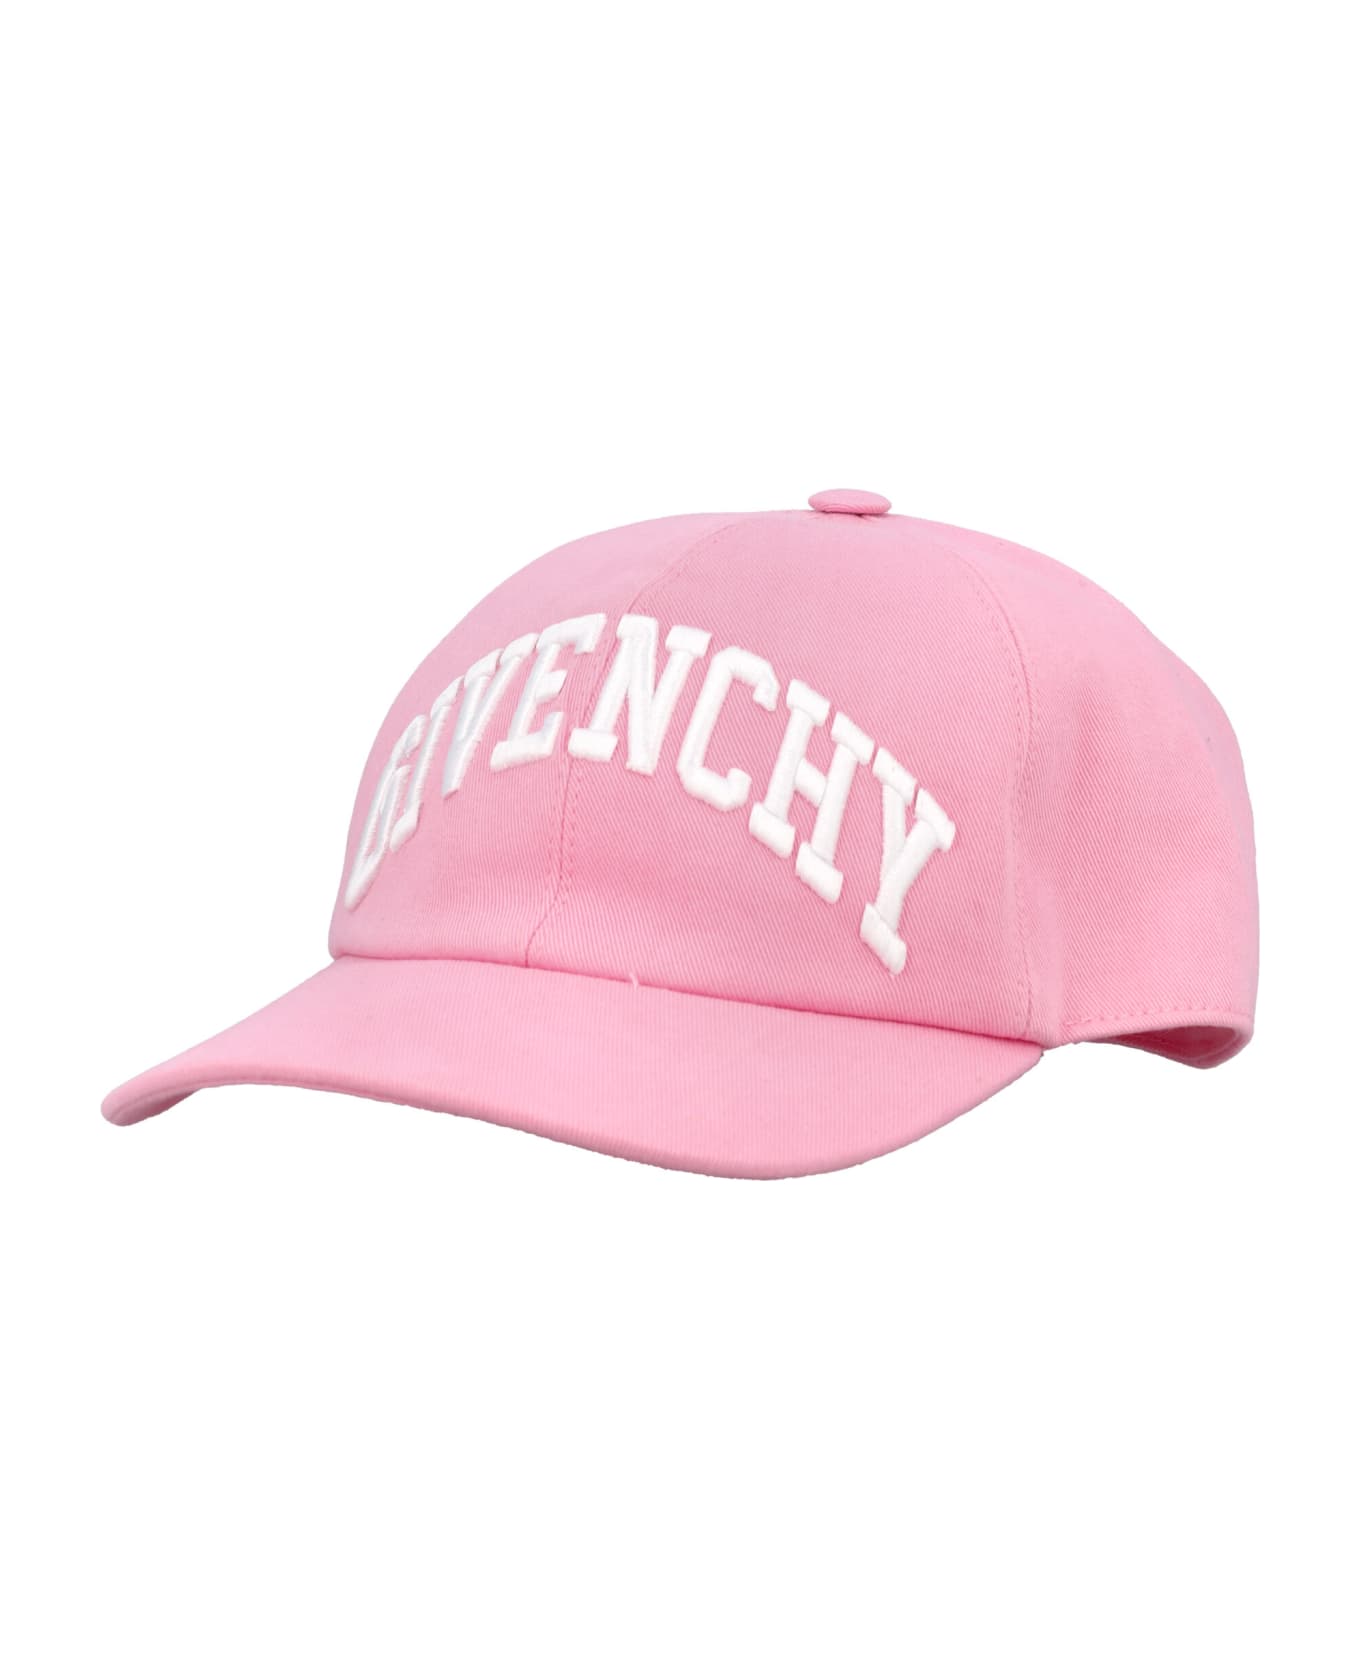 Givenchy Logo Cap - PINK